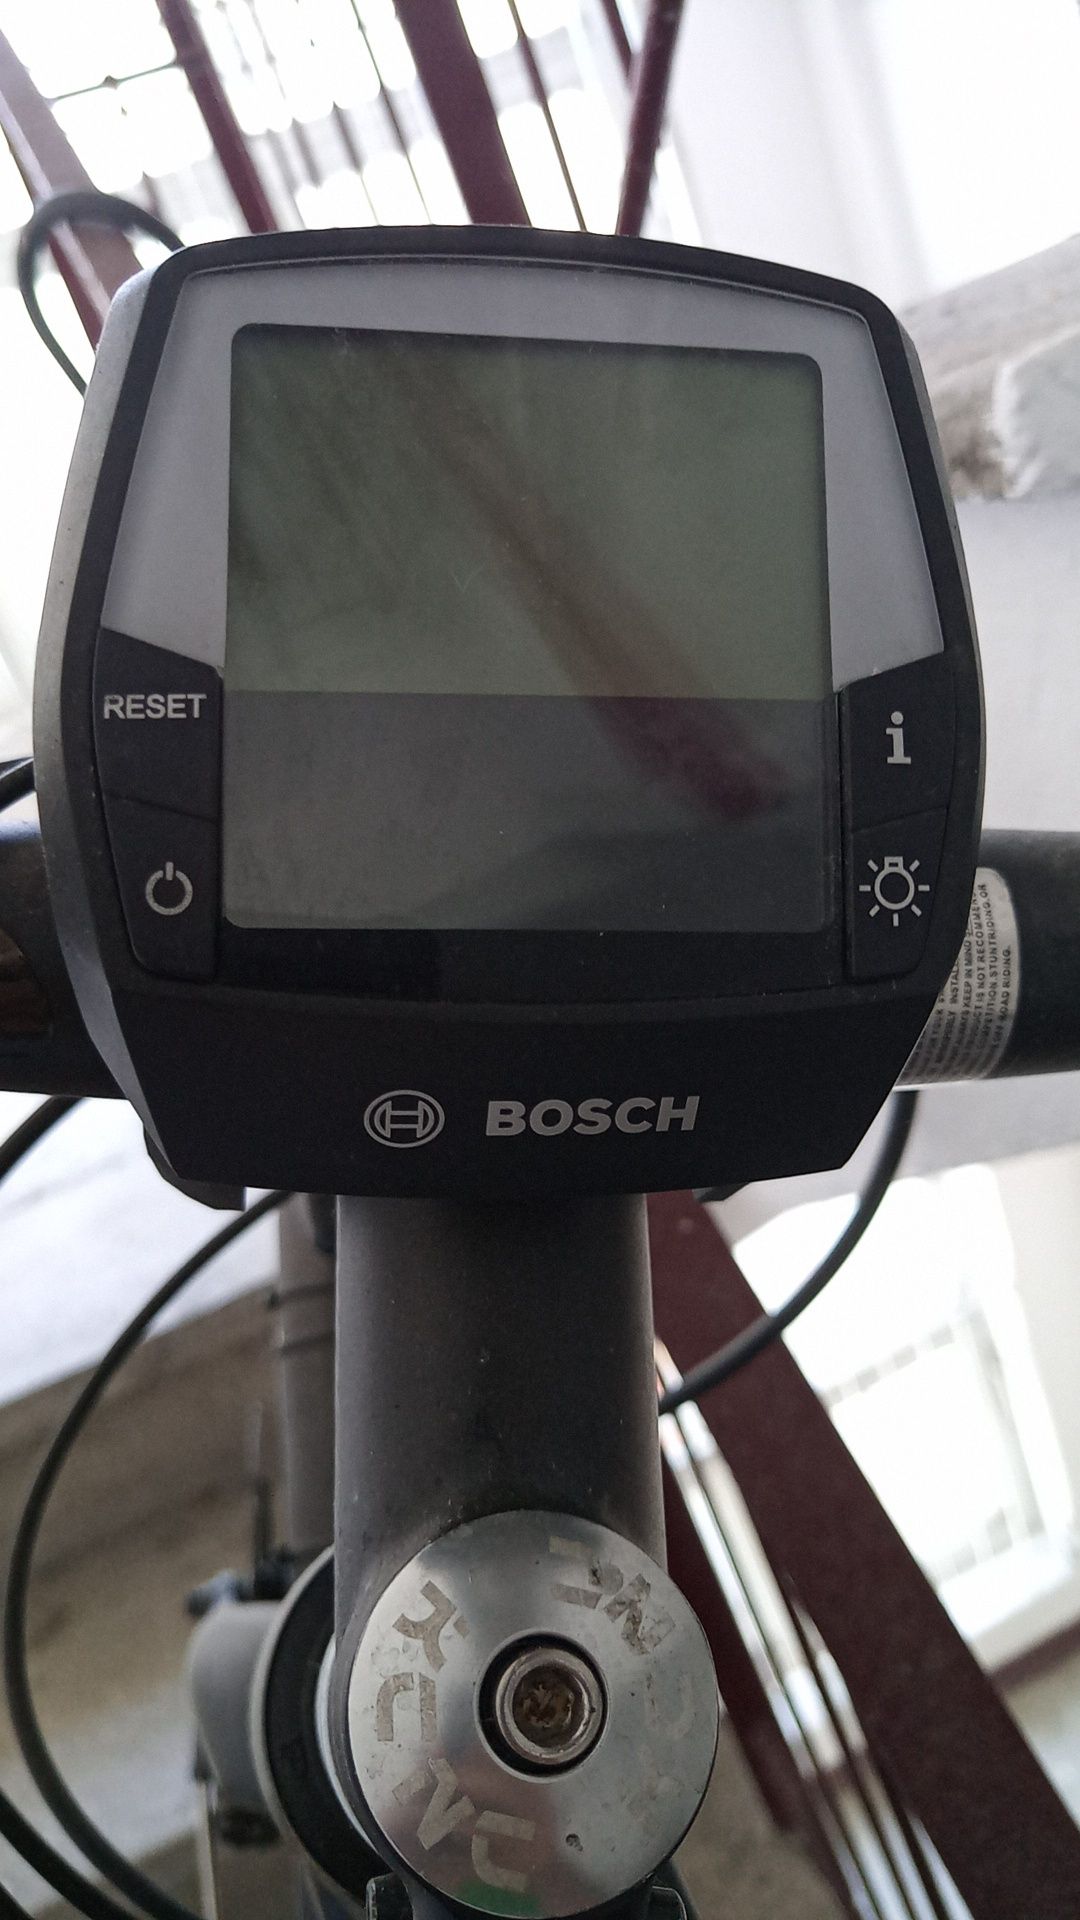 Mini Proiector 18w / Vând bicicletă electrică Scott eSub, Bosch